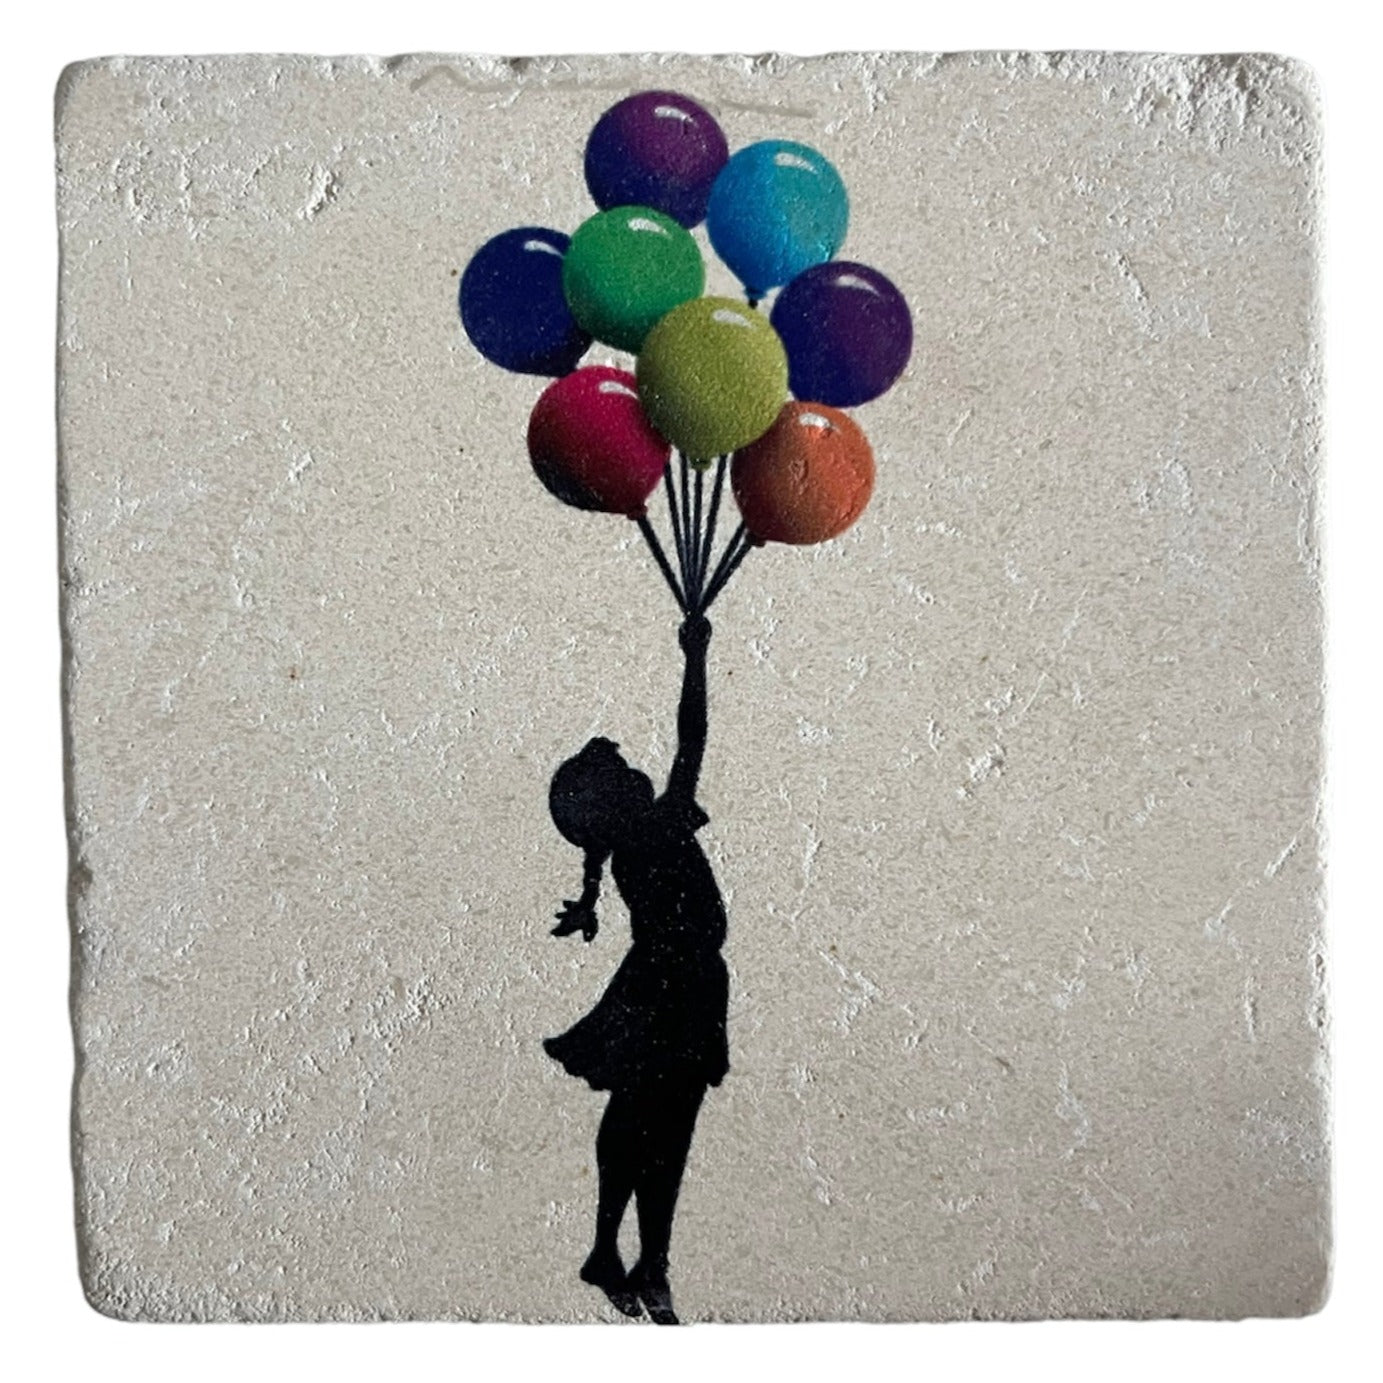 BANKSY *Fliegendes Ballonmädchen* Siebdruck auf Stein, limitierte Auflage